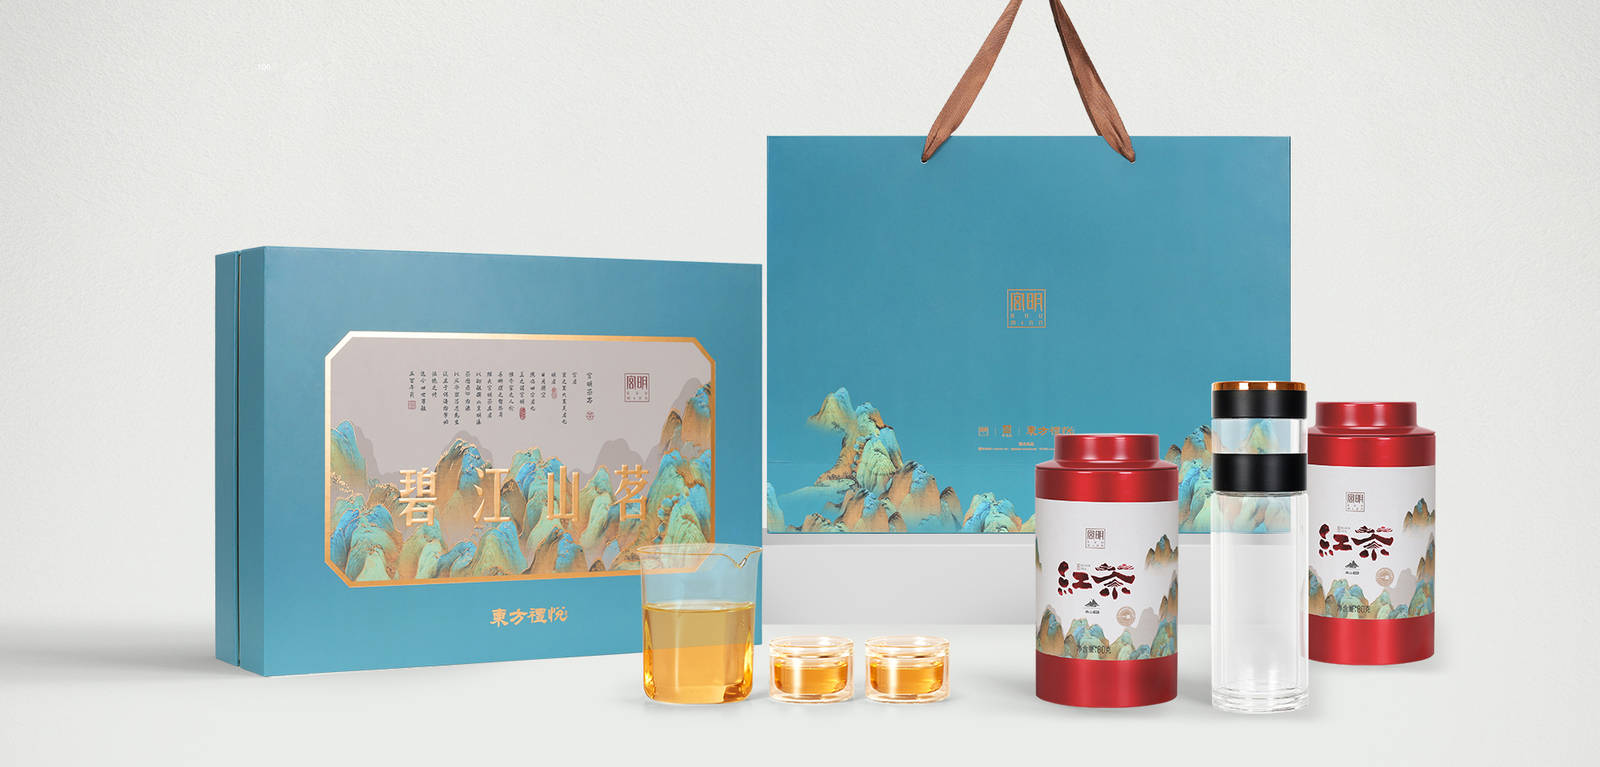 茶叶品牌包装设计视觉方案